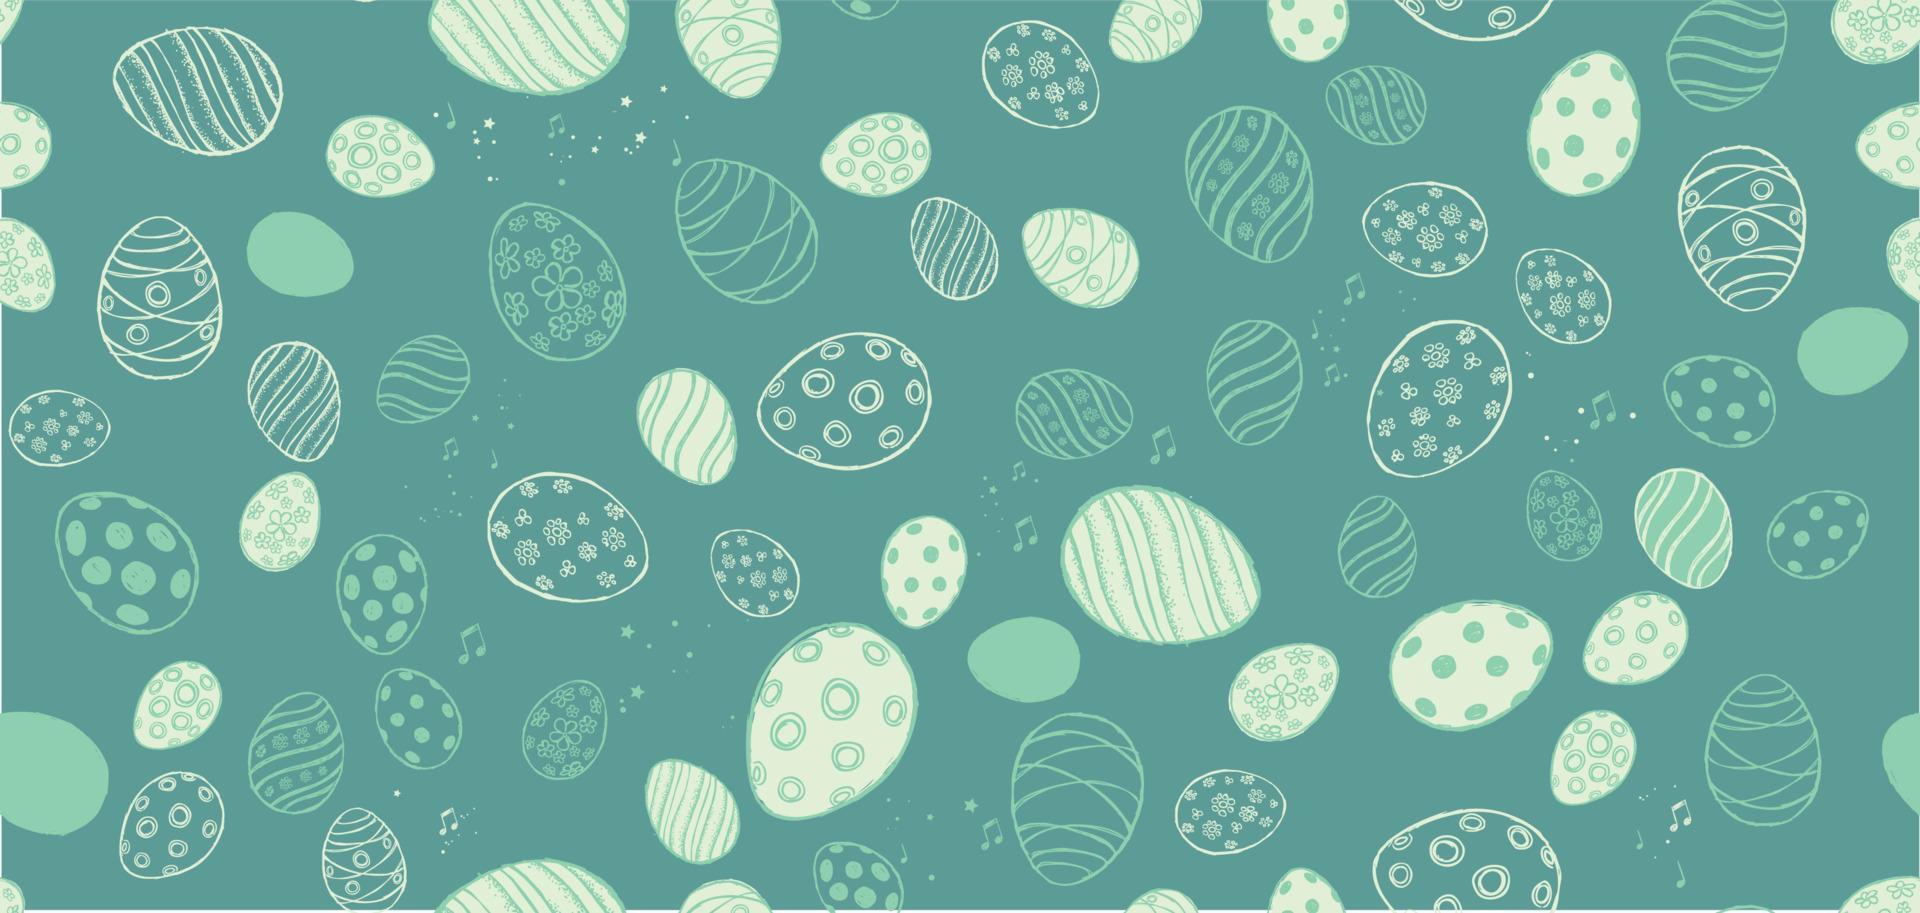 klotter dekorativ ägg och element för påsk. vektor